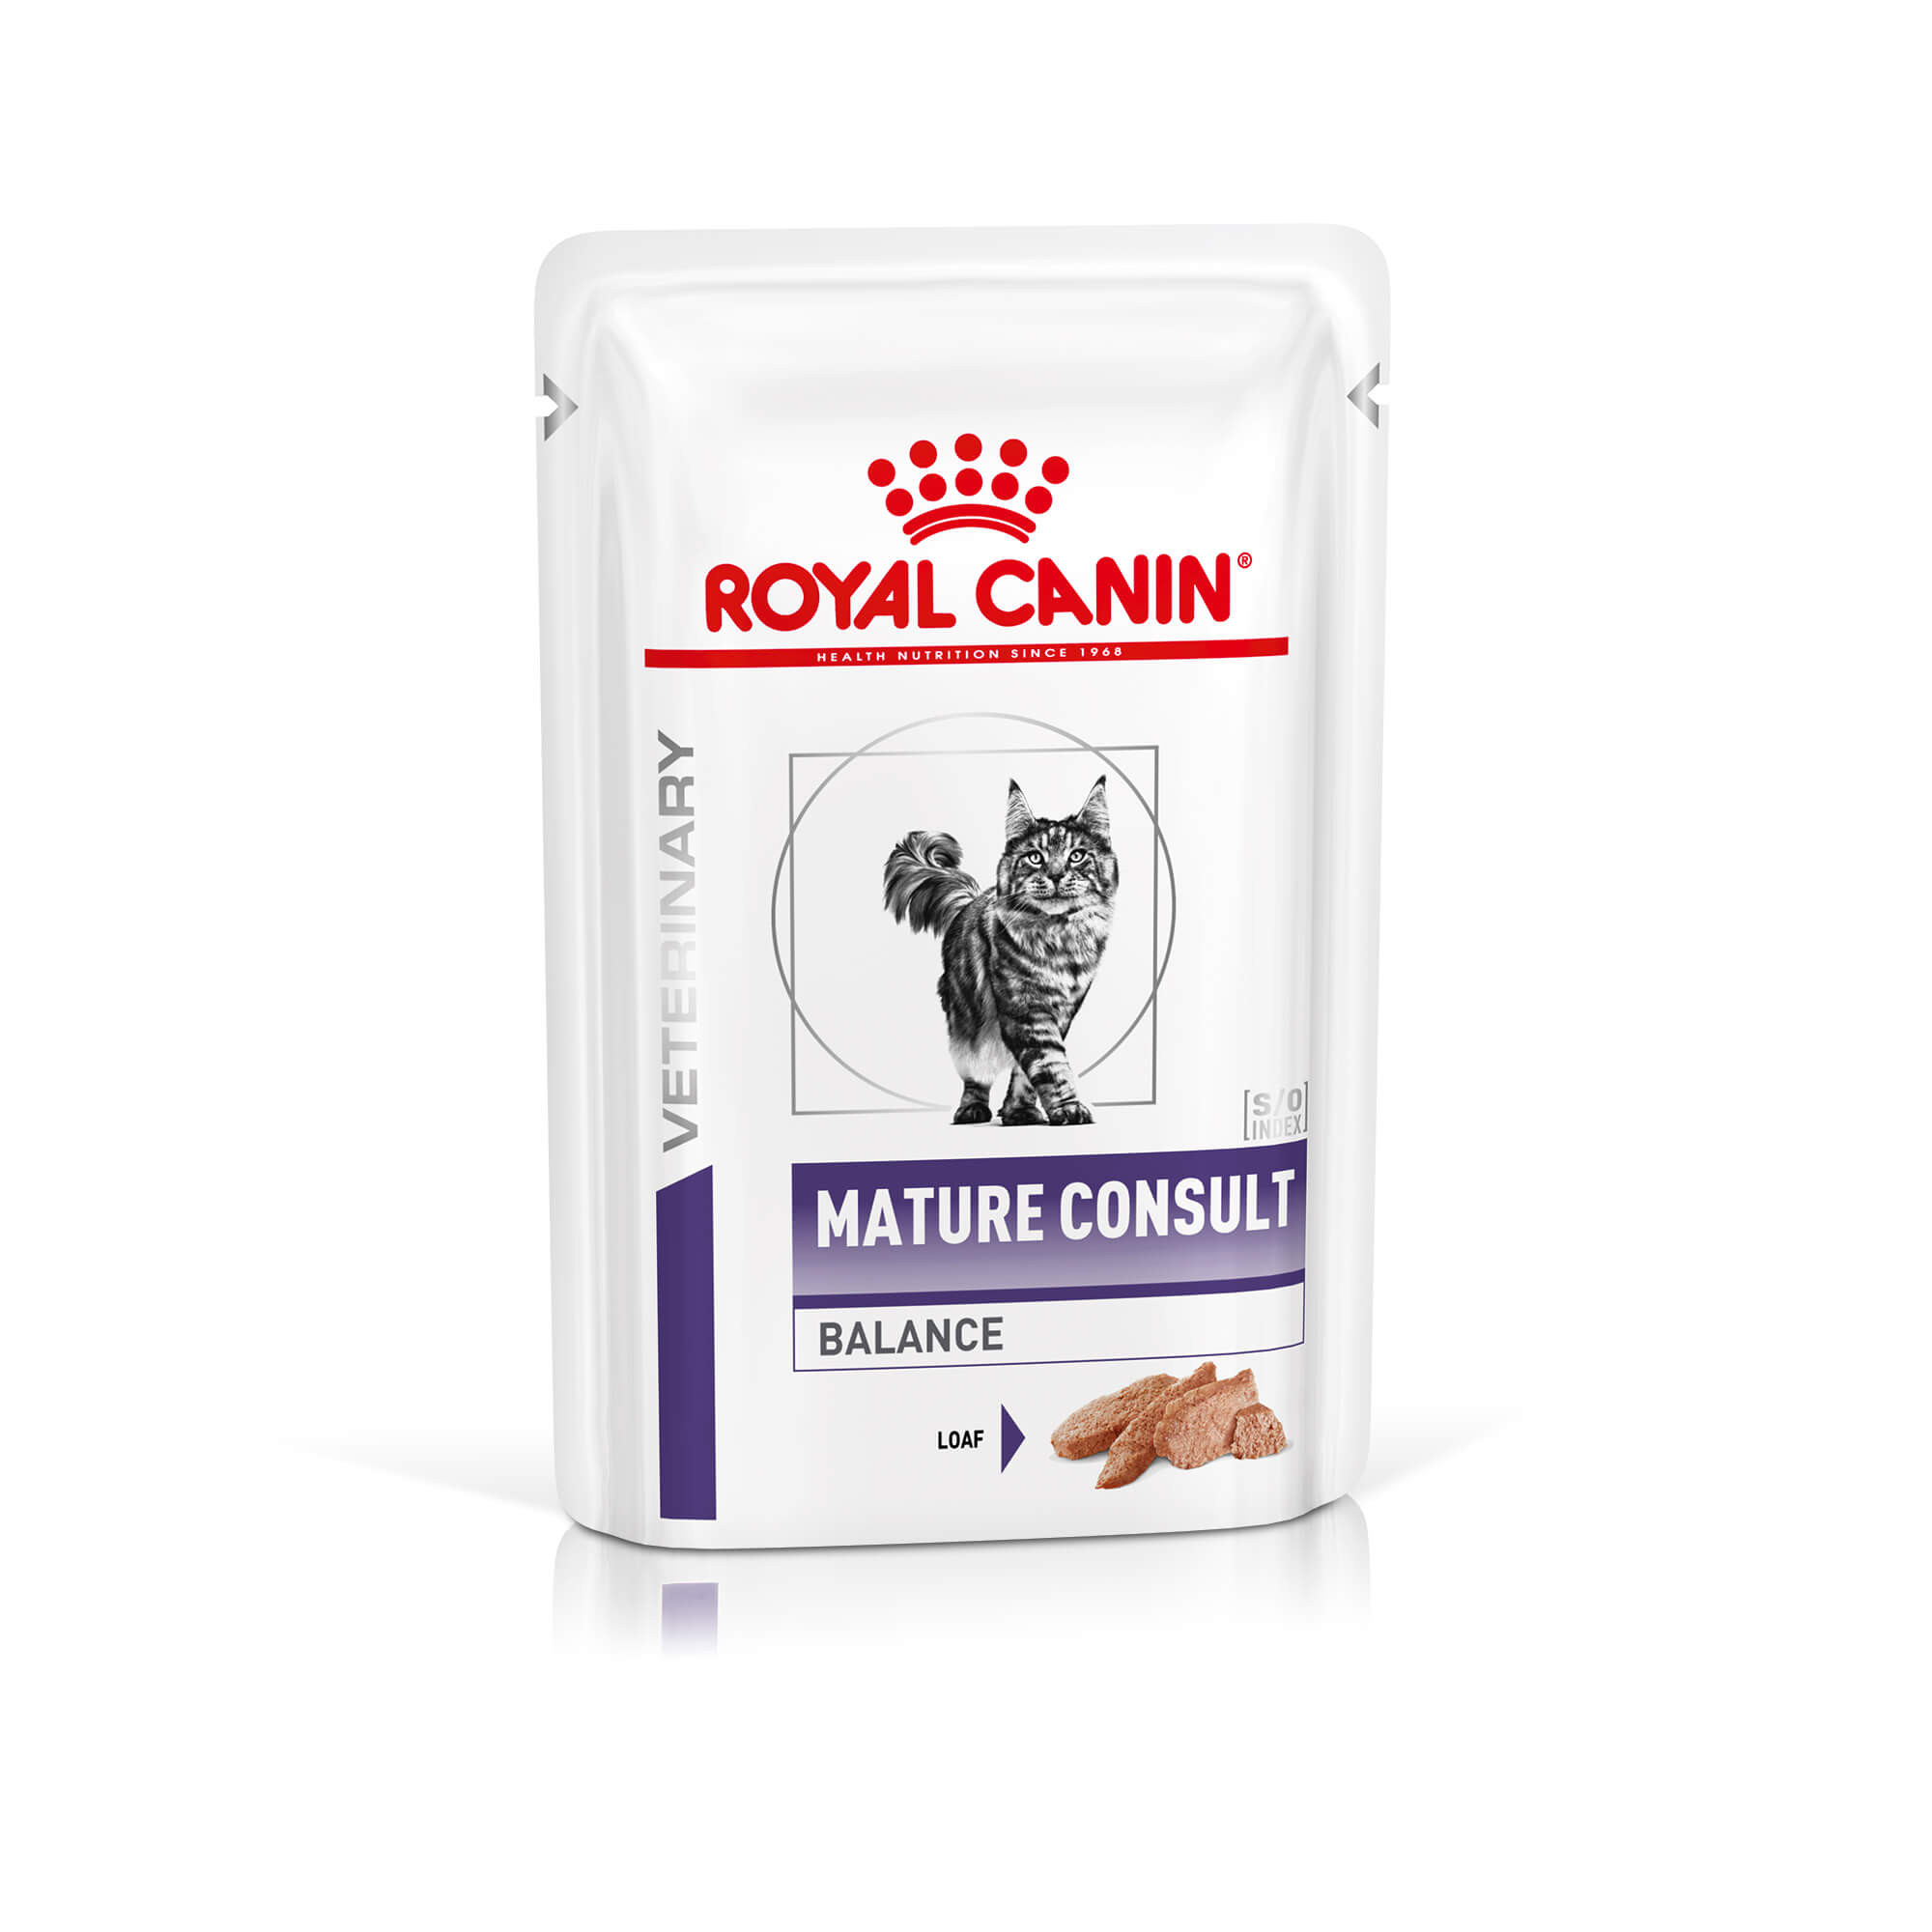 Royal Canin Expert Mature Consult Balance våtfoder katt